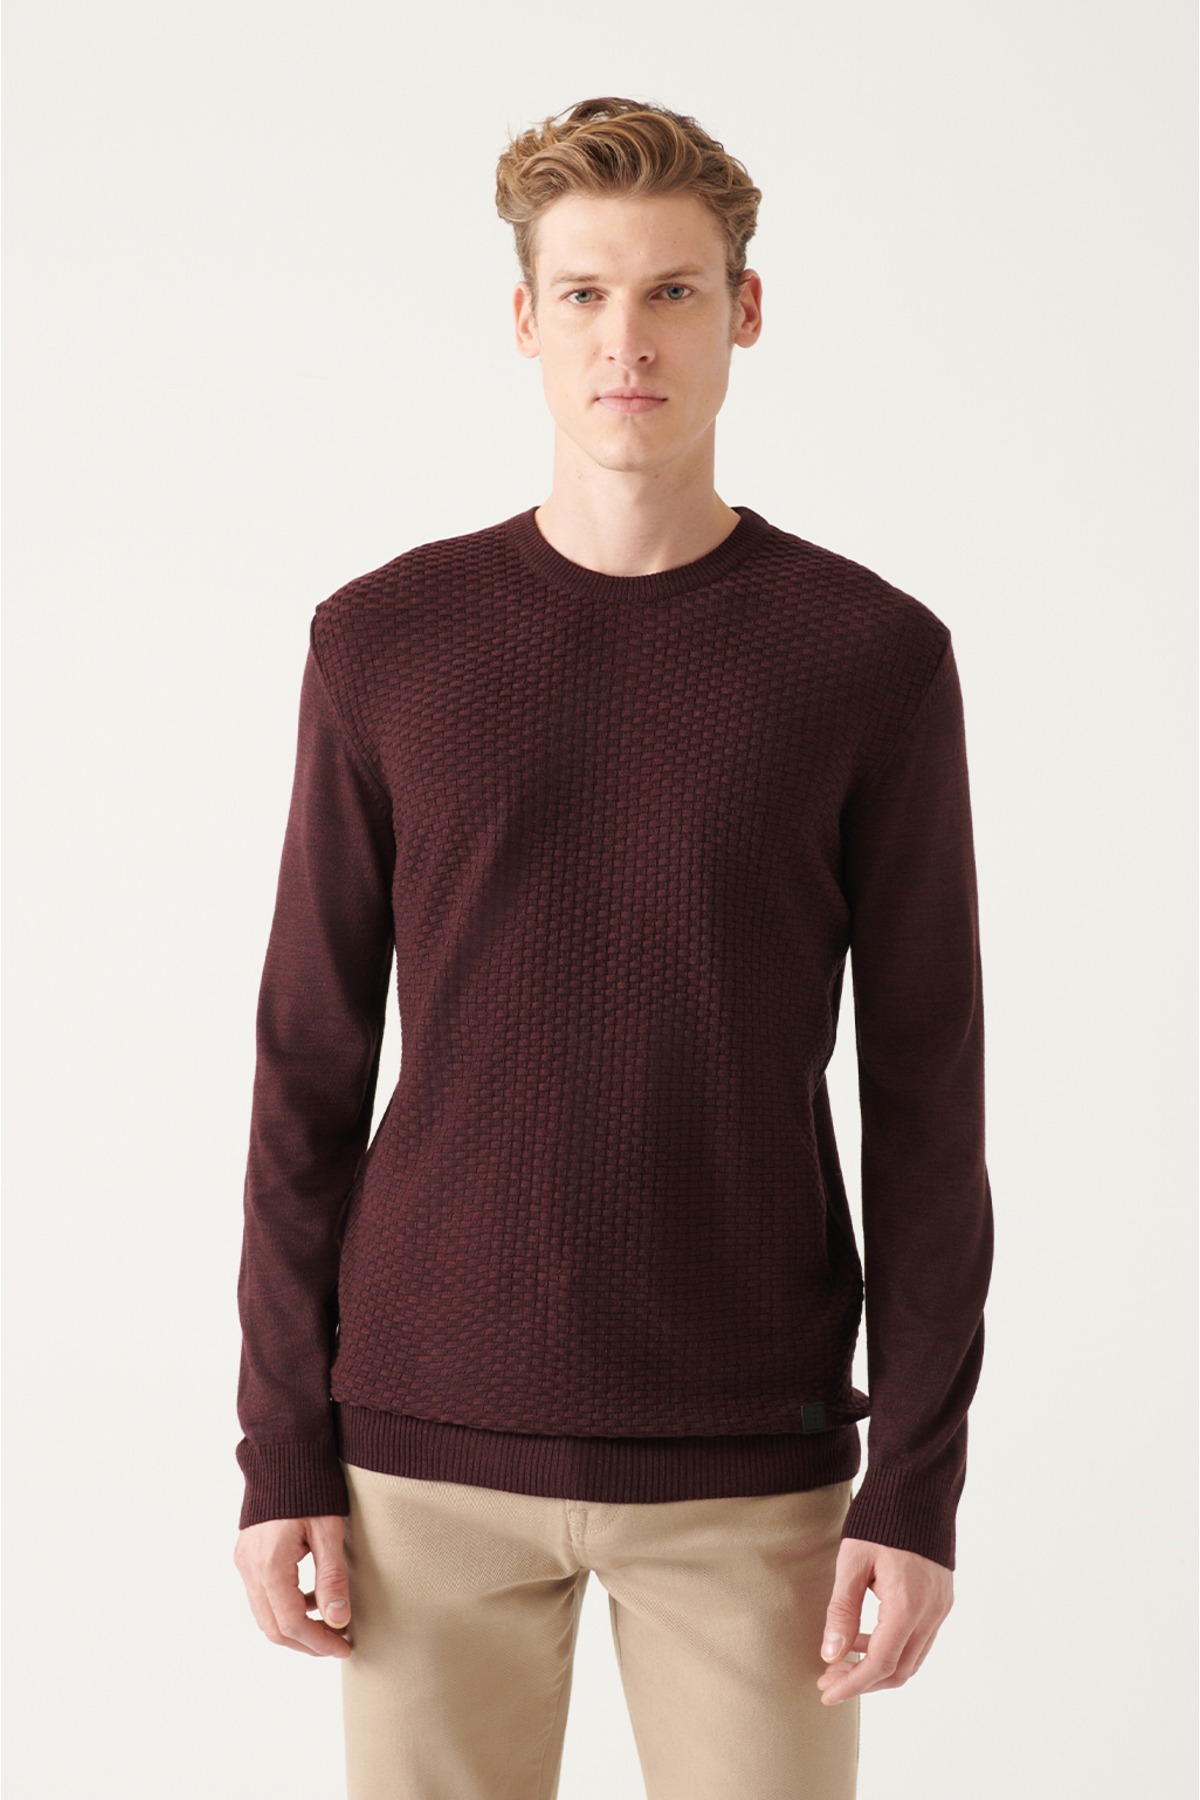 Levně Avva Men's Burgundy Crew Neck Front Textured Regular Fit Knitwear Sweater